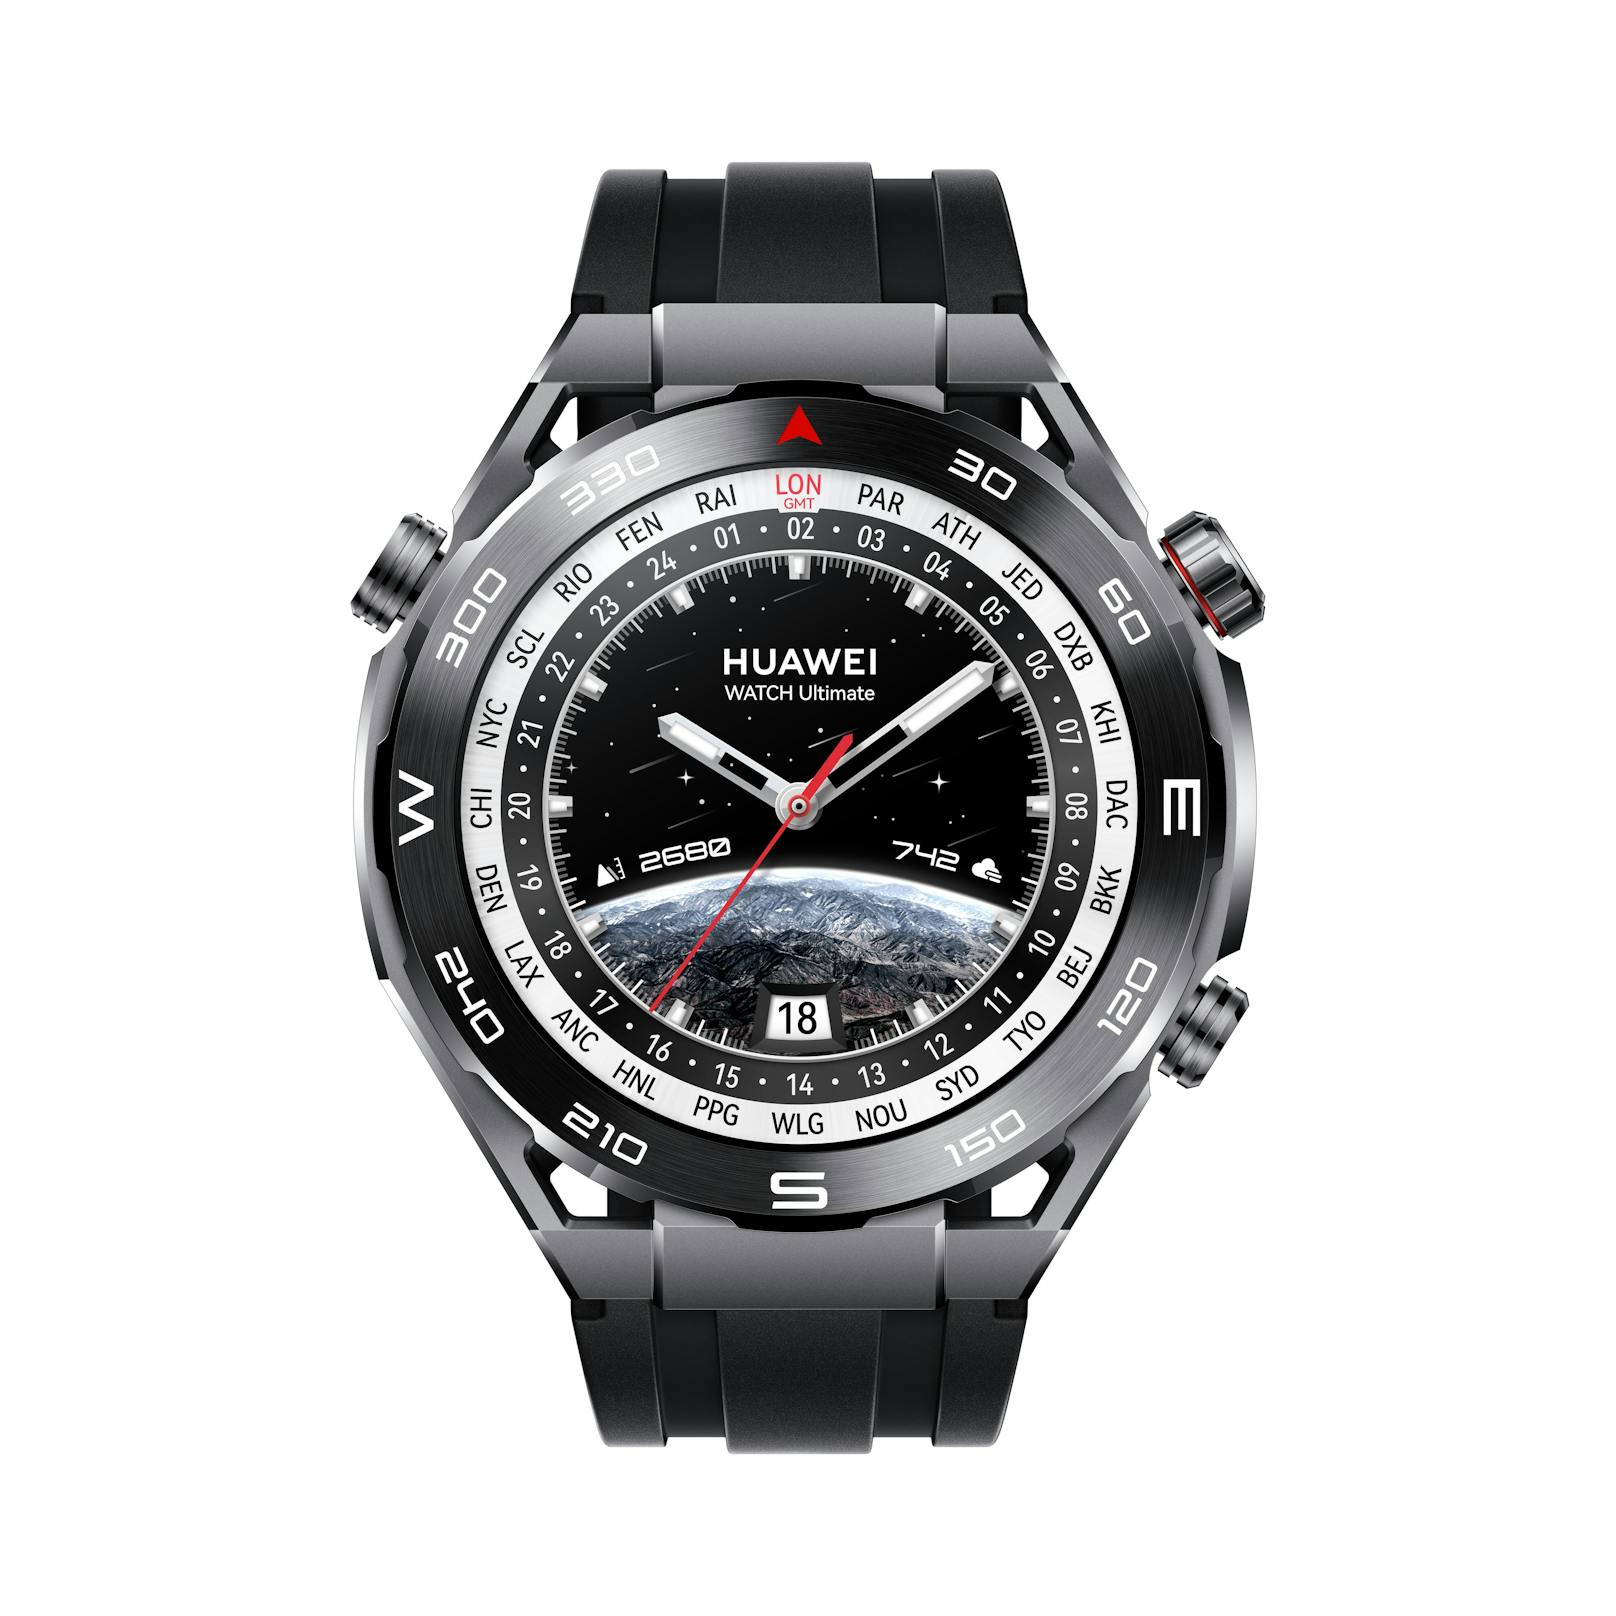 ... werden: <a href="https://www.heute.at/t/huawei-100062937">Huawei hat</a>&nbsp;die neue Huawei Watch Ultimate vorgestellt. Sie wird in Österreich ab Mitte April 2023 in der Farbe "Expedition Black" um 749 Euro erhältlich ...